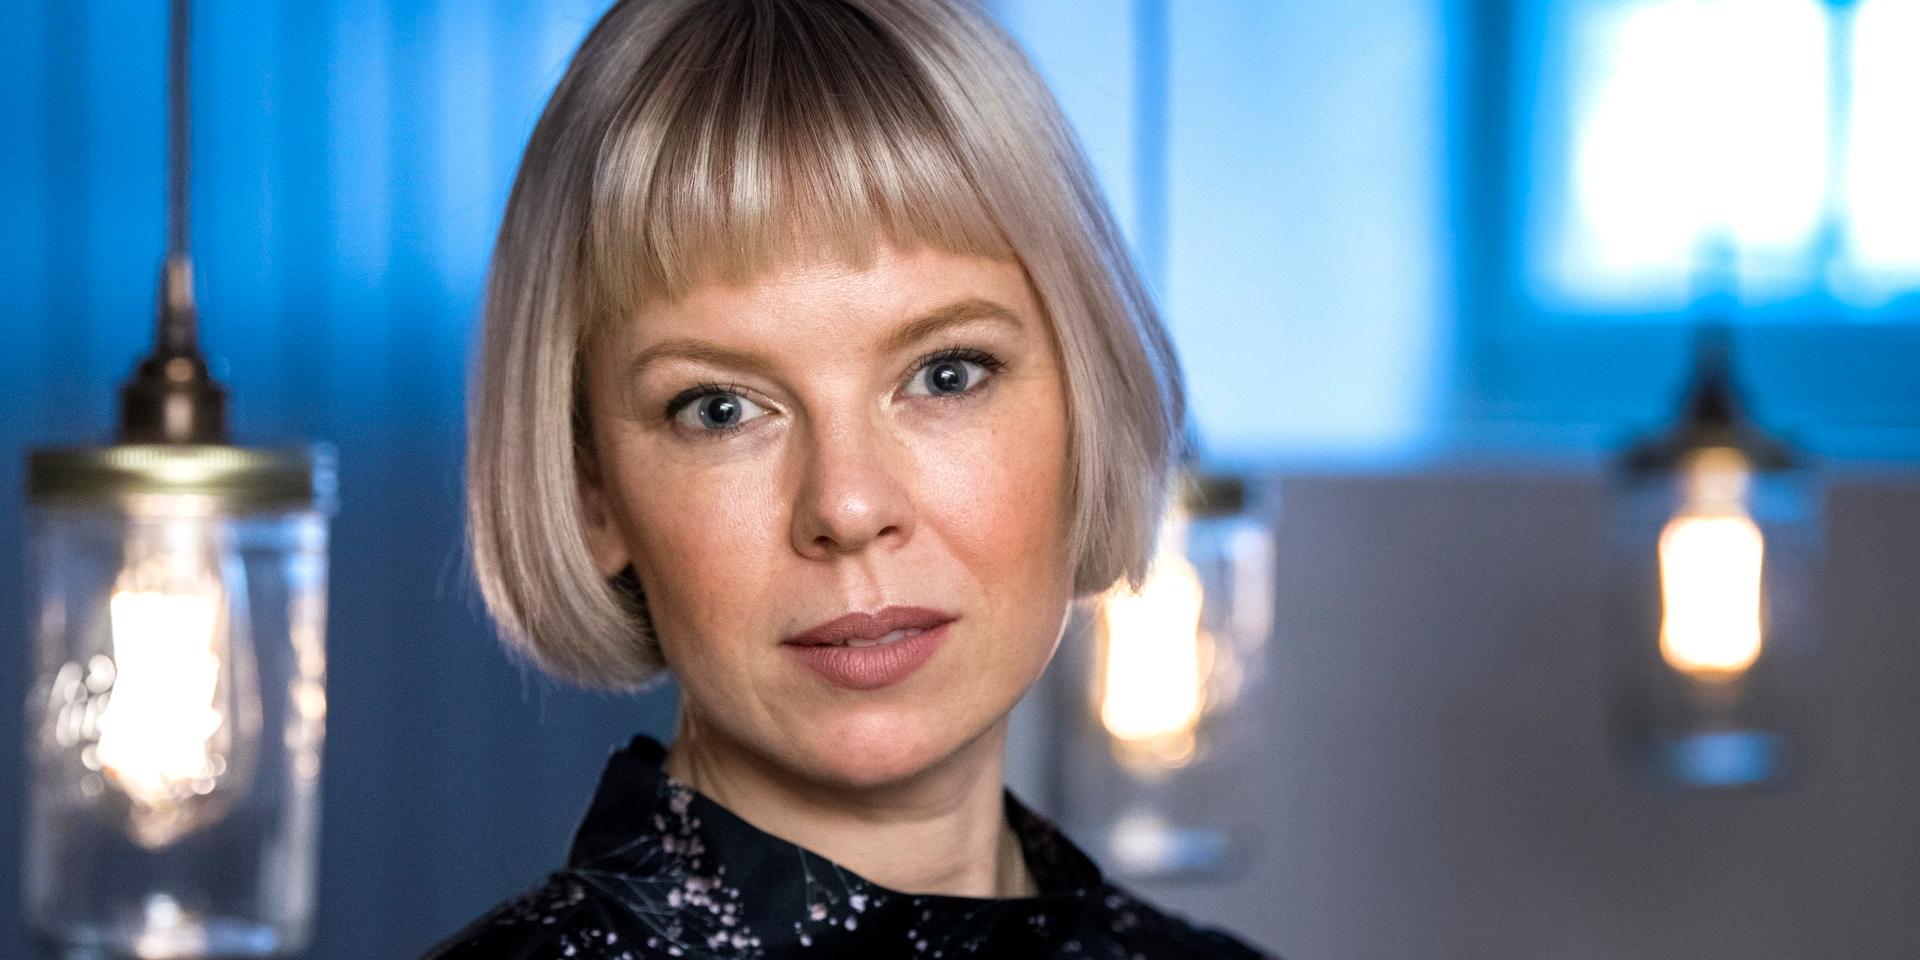 Alma Pöysti gör huvudrollen i filmen om Tove Jansson som nu är nominerad till europeiskt filmpris. Arkivbild,